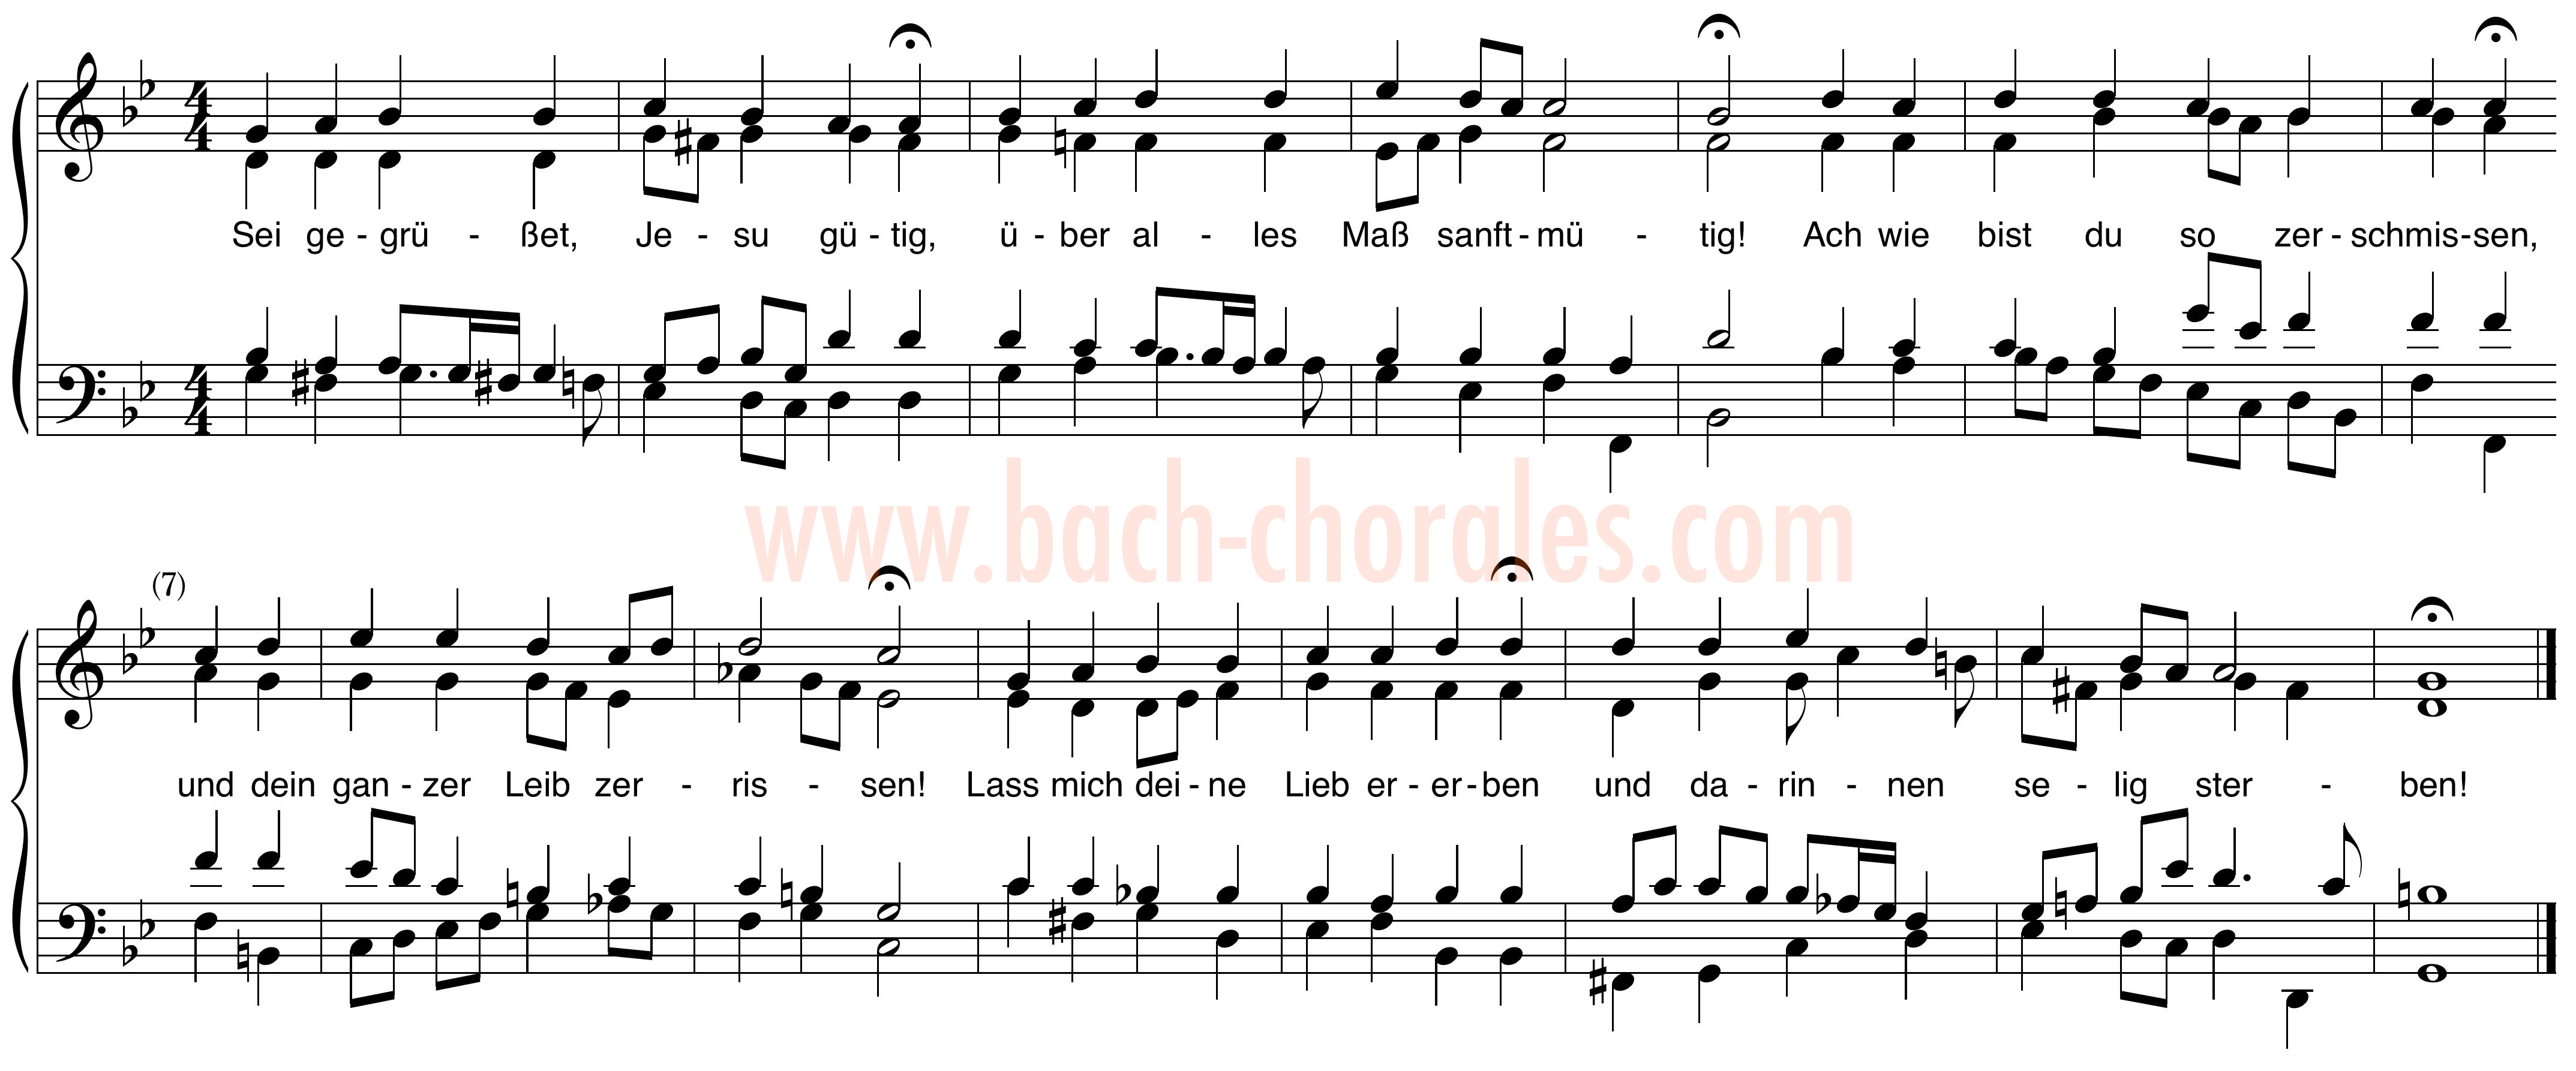 notenbeeld BWV 410 op https://www.bach-chorales.com/